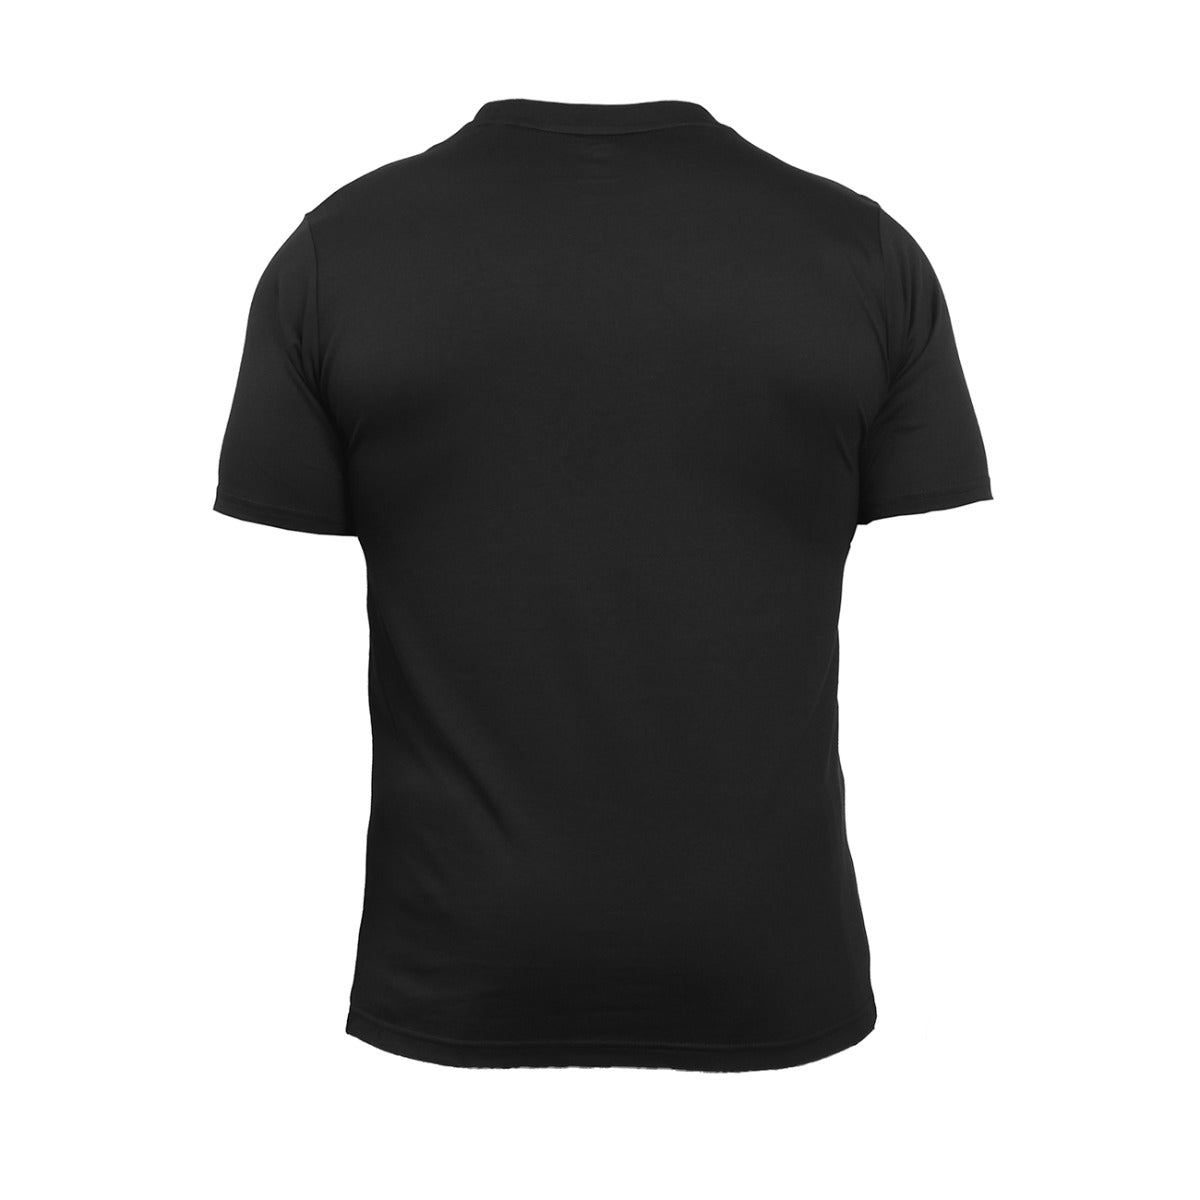 Anta SS TEE Basketball T-Shirt For Men, Black